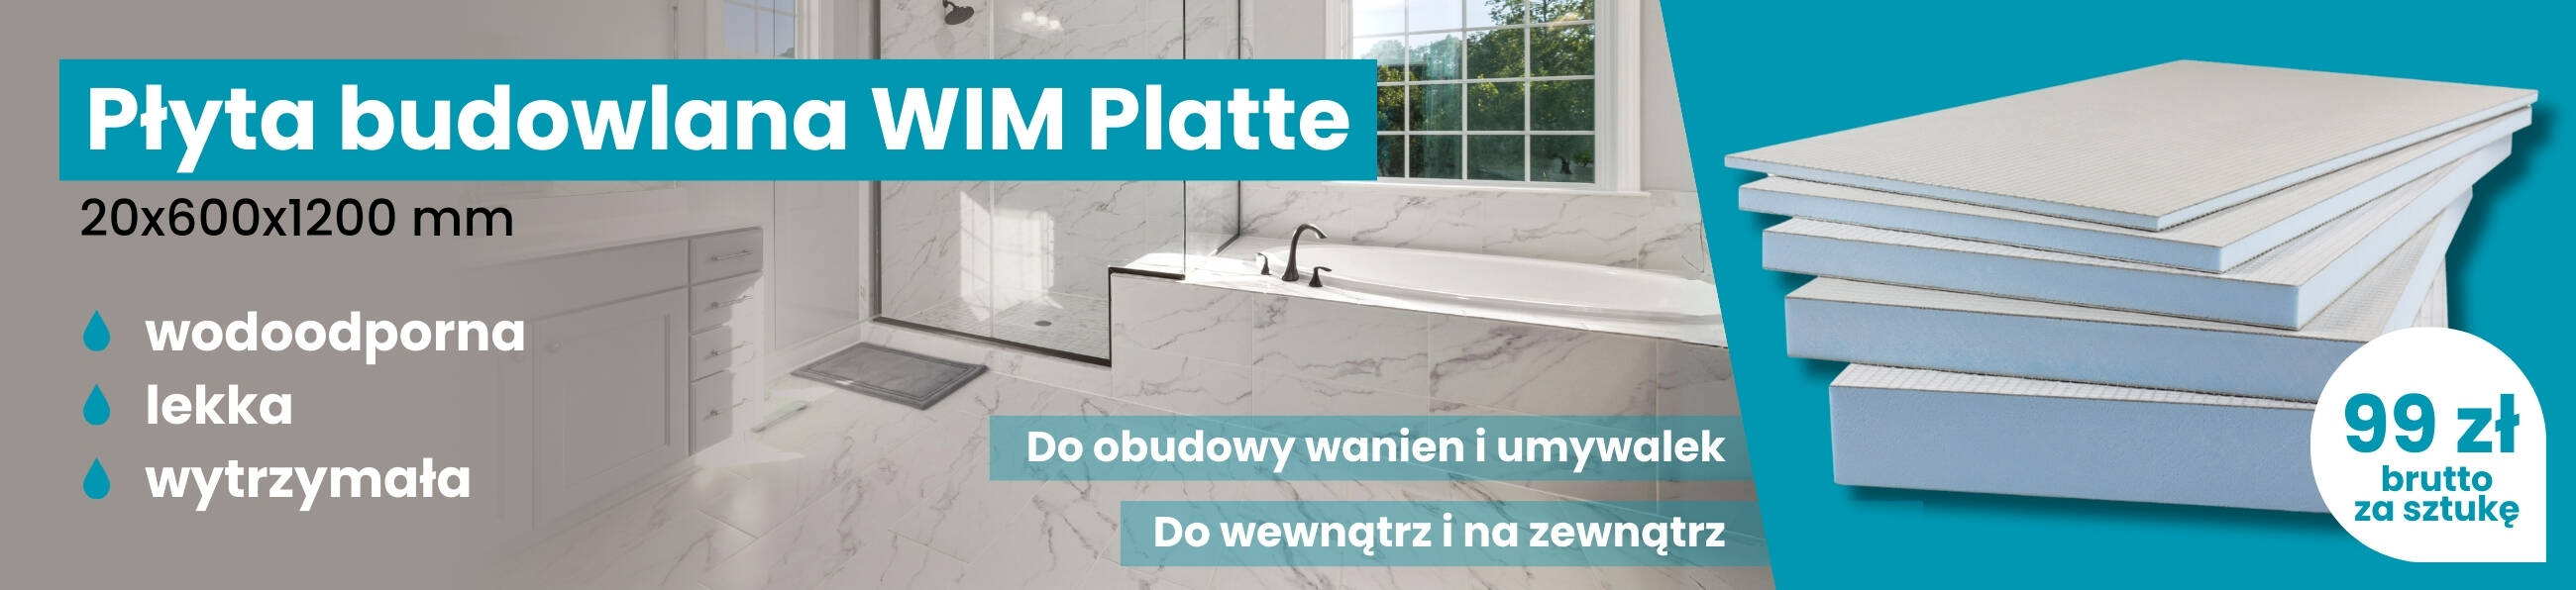 WIM Platte płyta budowlana - obudowa wanny i umywalki - e-sklep Lubar